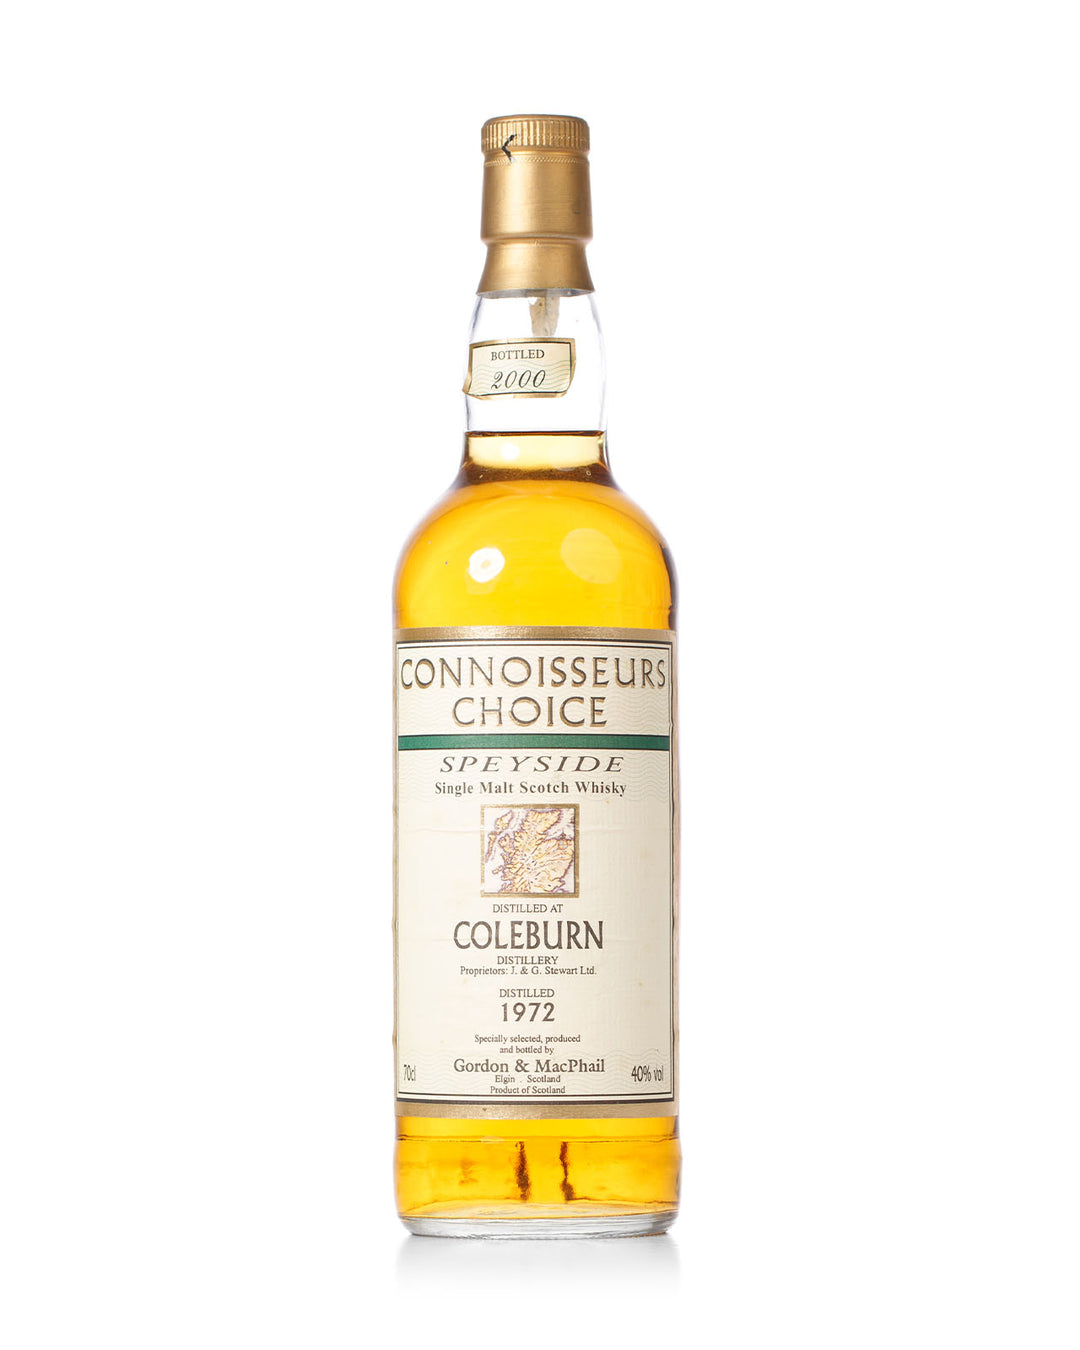 Coleburn 1972 Connoisseurs Choice Gordon & Macphail Bottled 2000